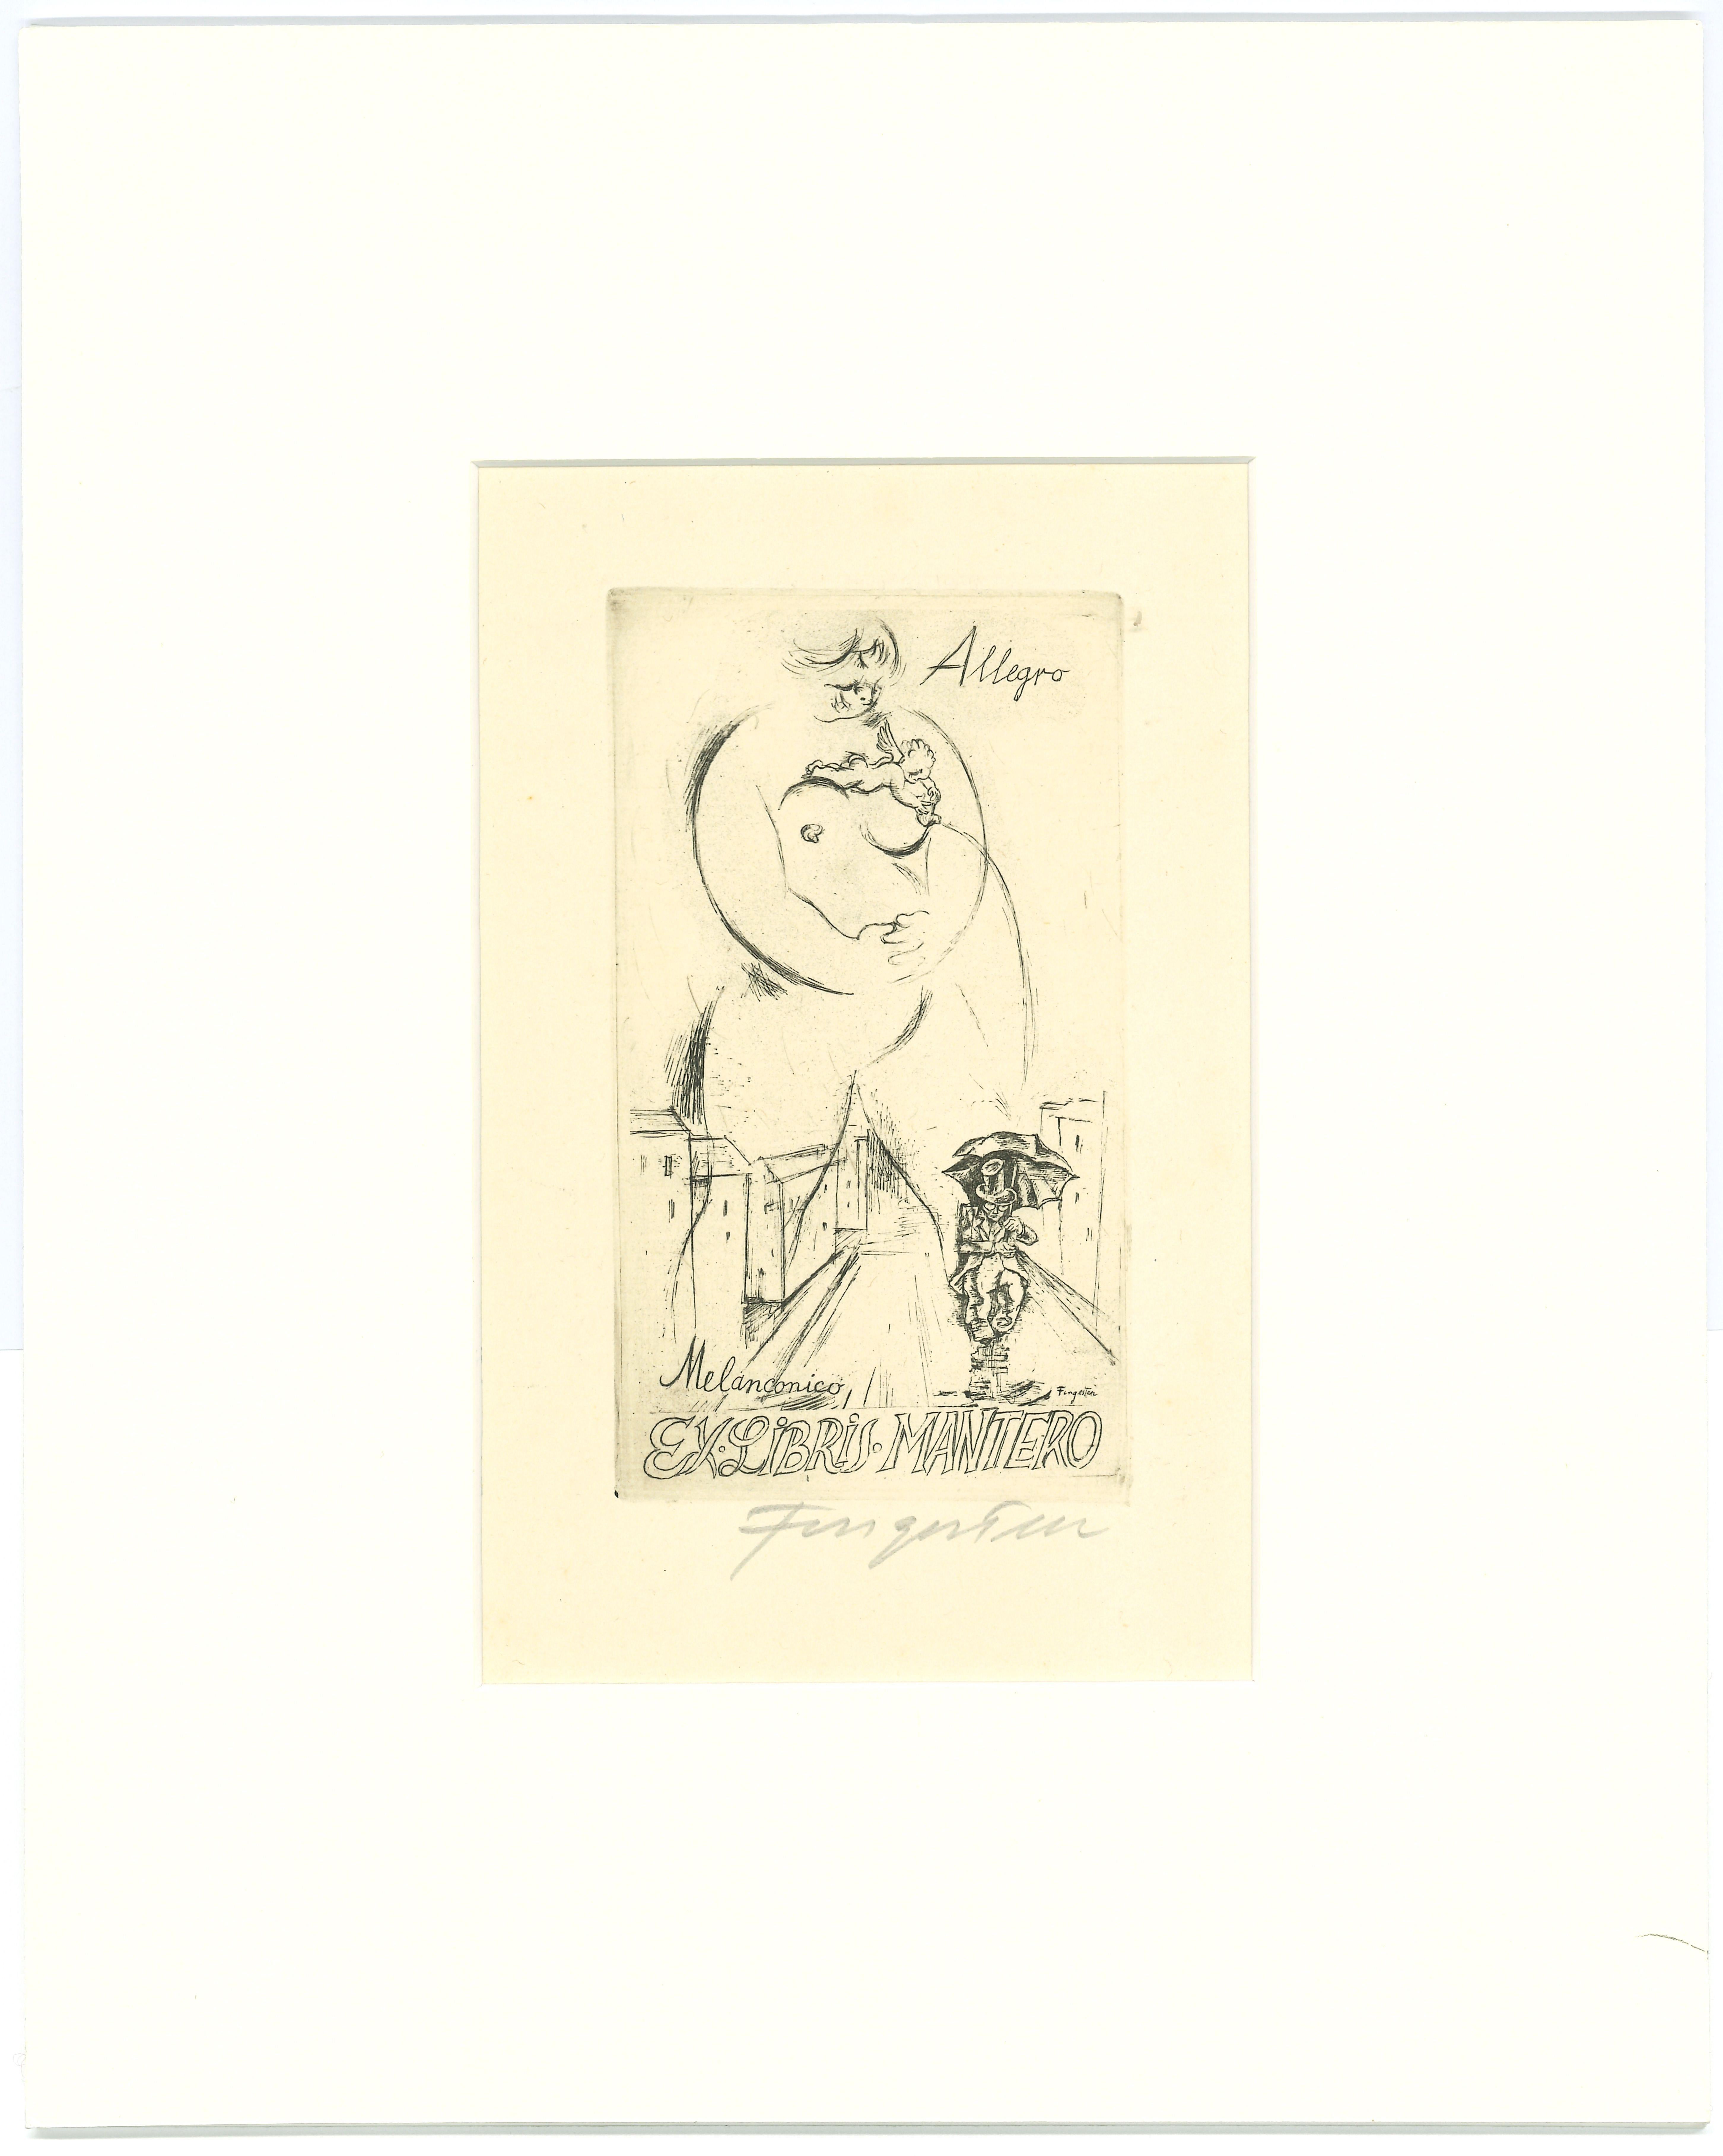 Ex Libris Allegro Melanconico - Original Etching by M. Fingesten - 1930s - Print by Michel Fingesten